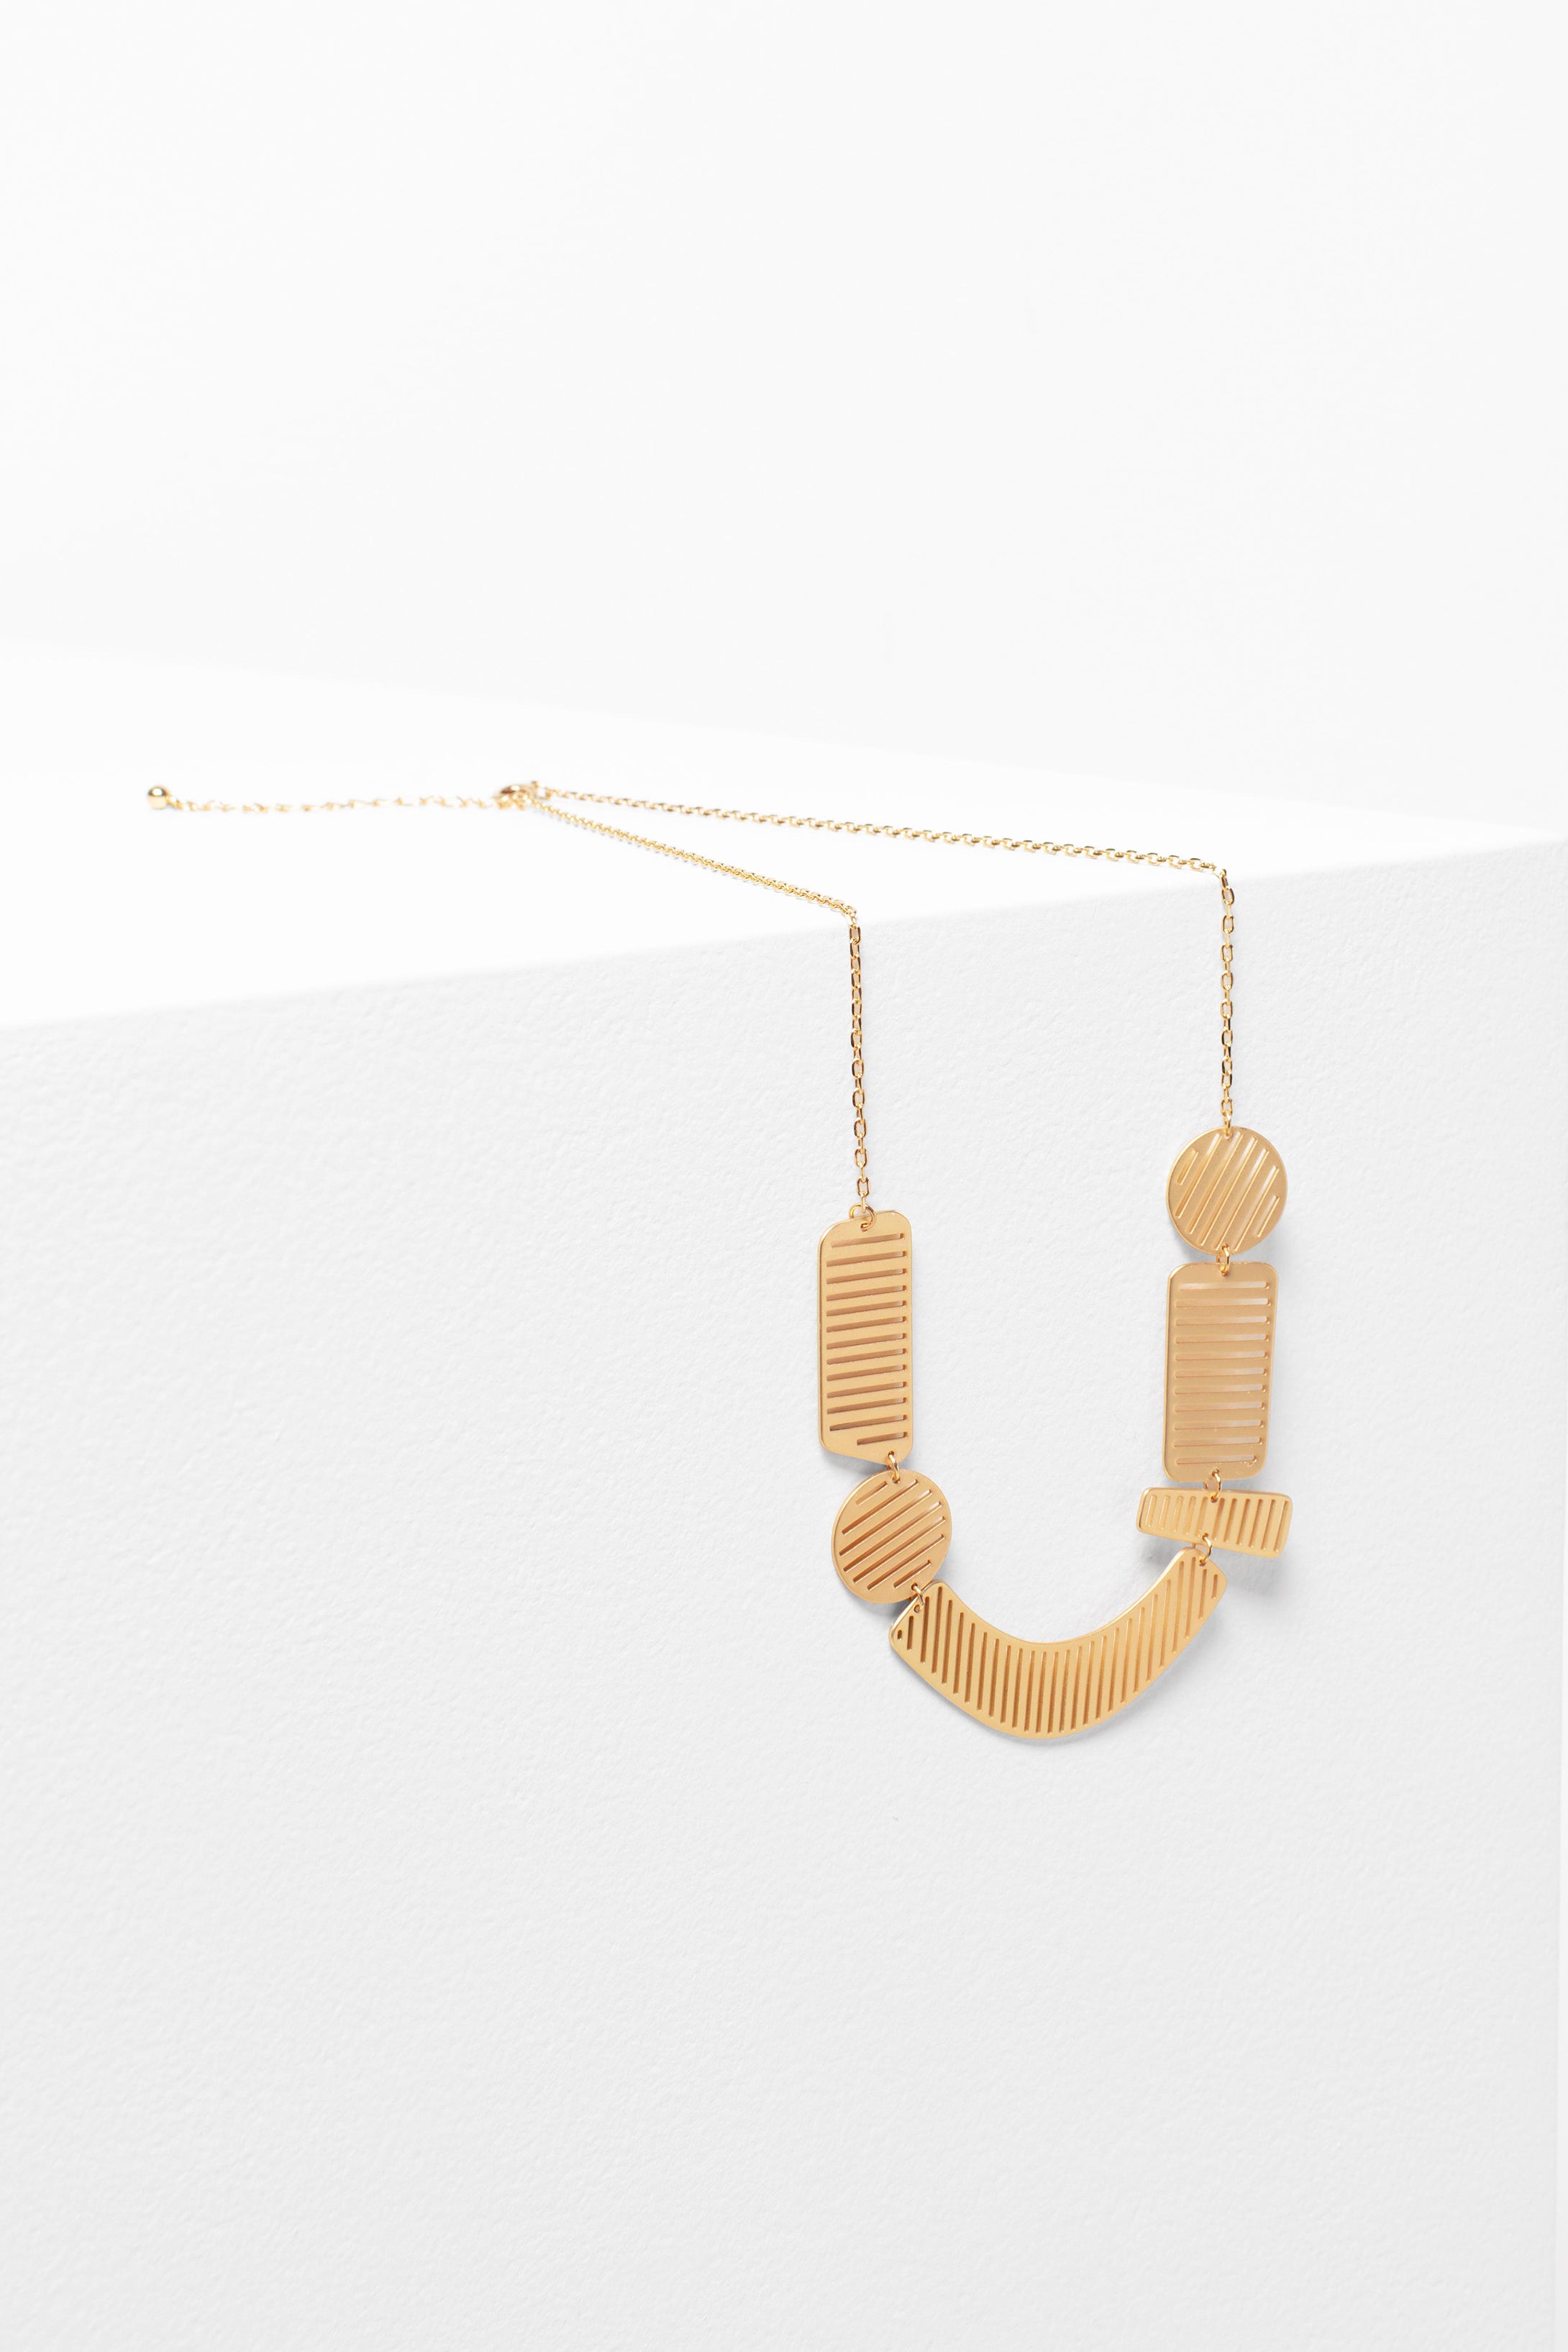 Gris Metal Pendant Chain Short Necklace | GOLD